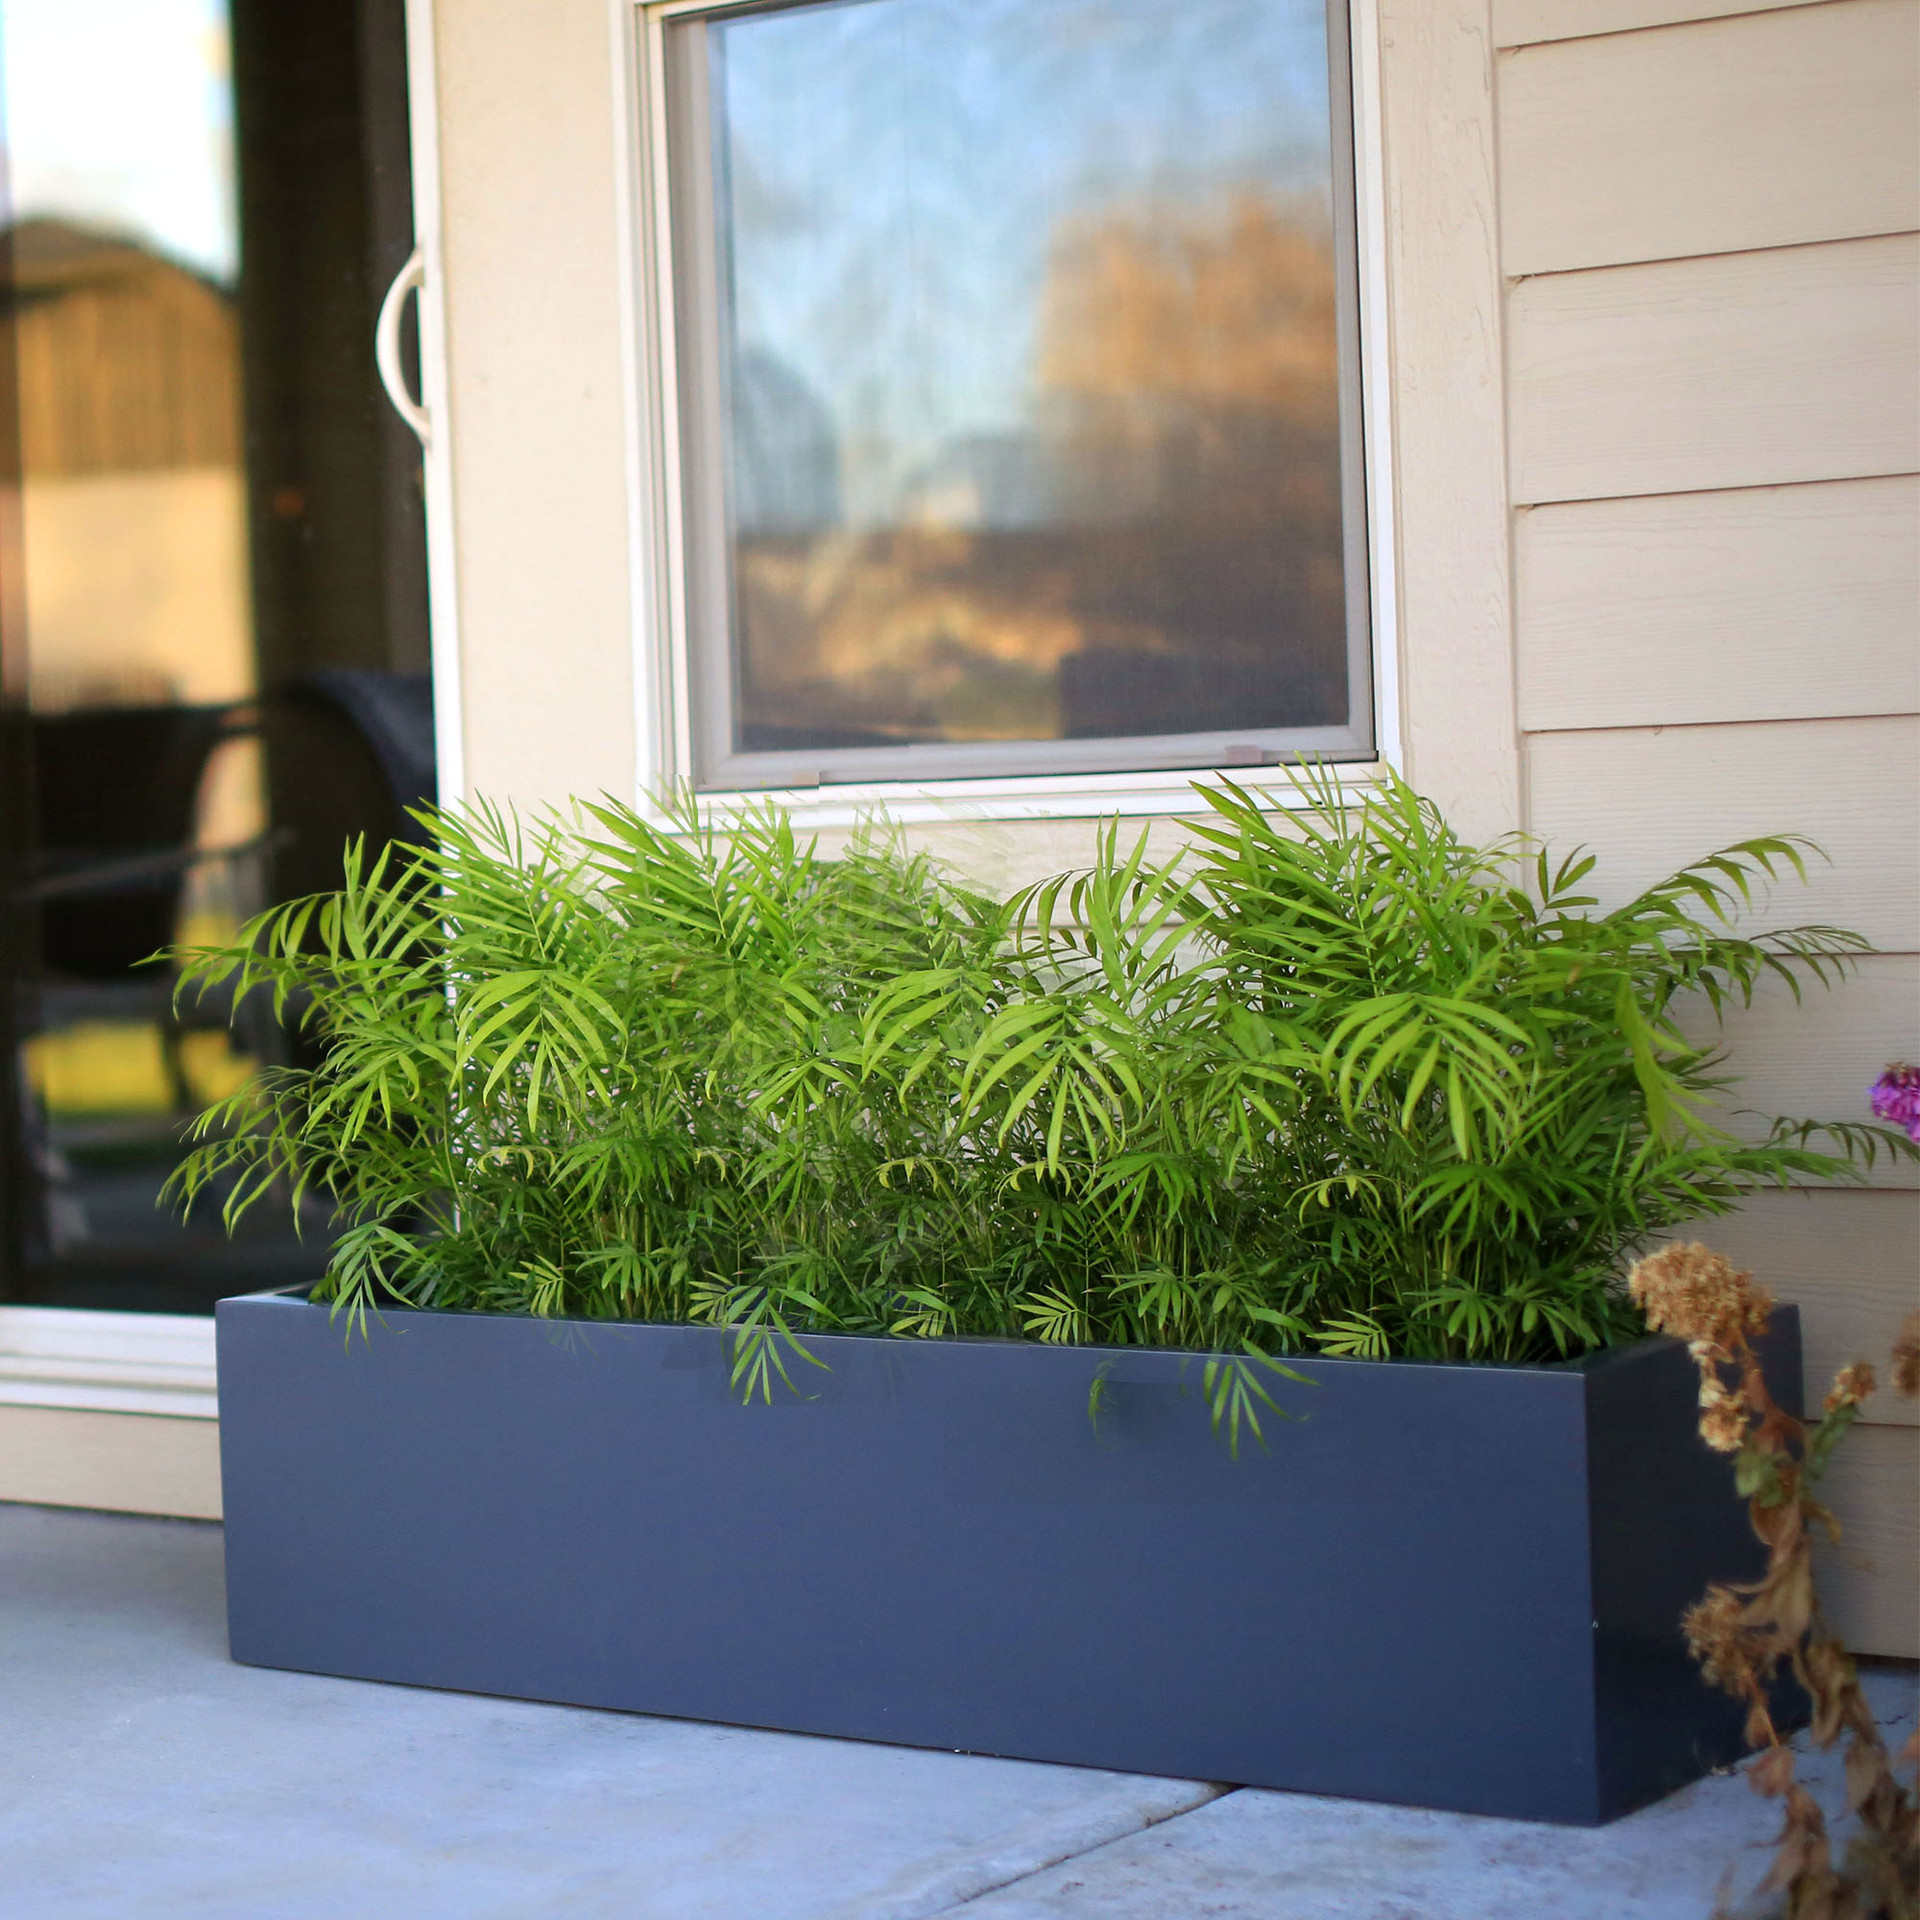 jeg behøver meditation ært Premium Quality Planter Boxes - Pots Planters & More